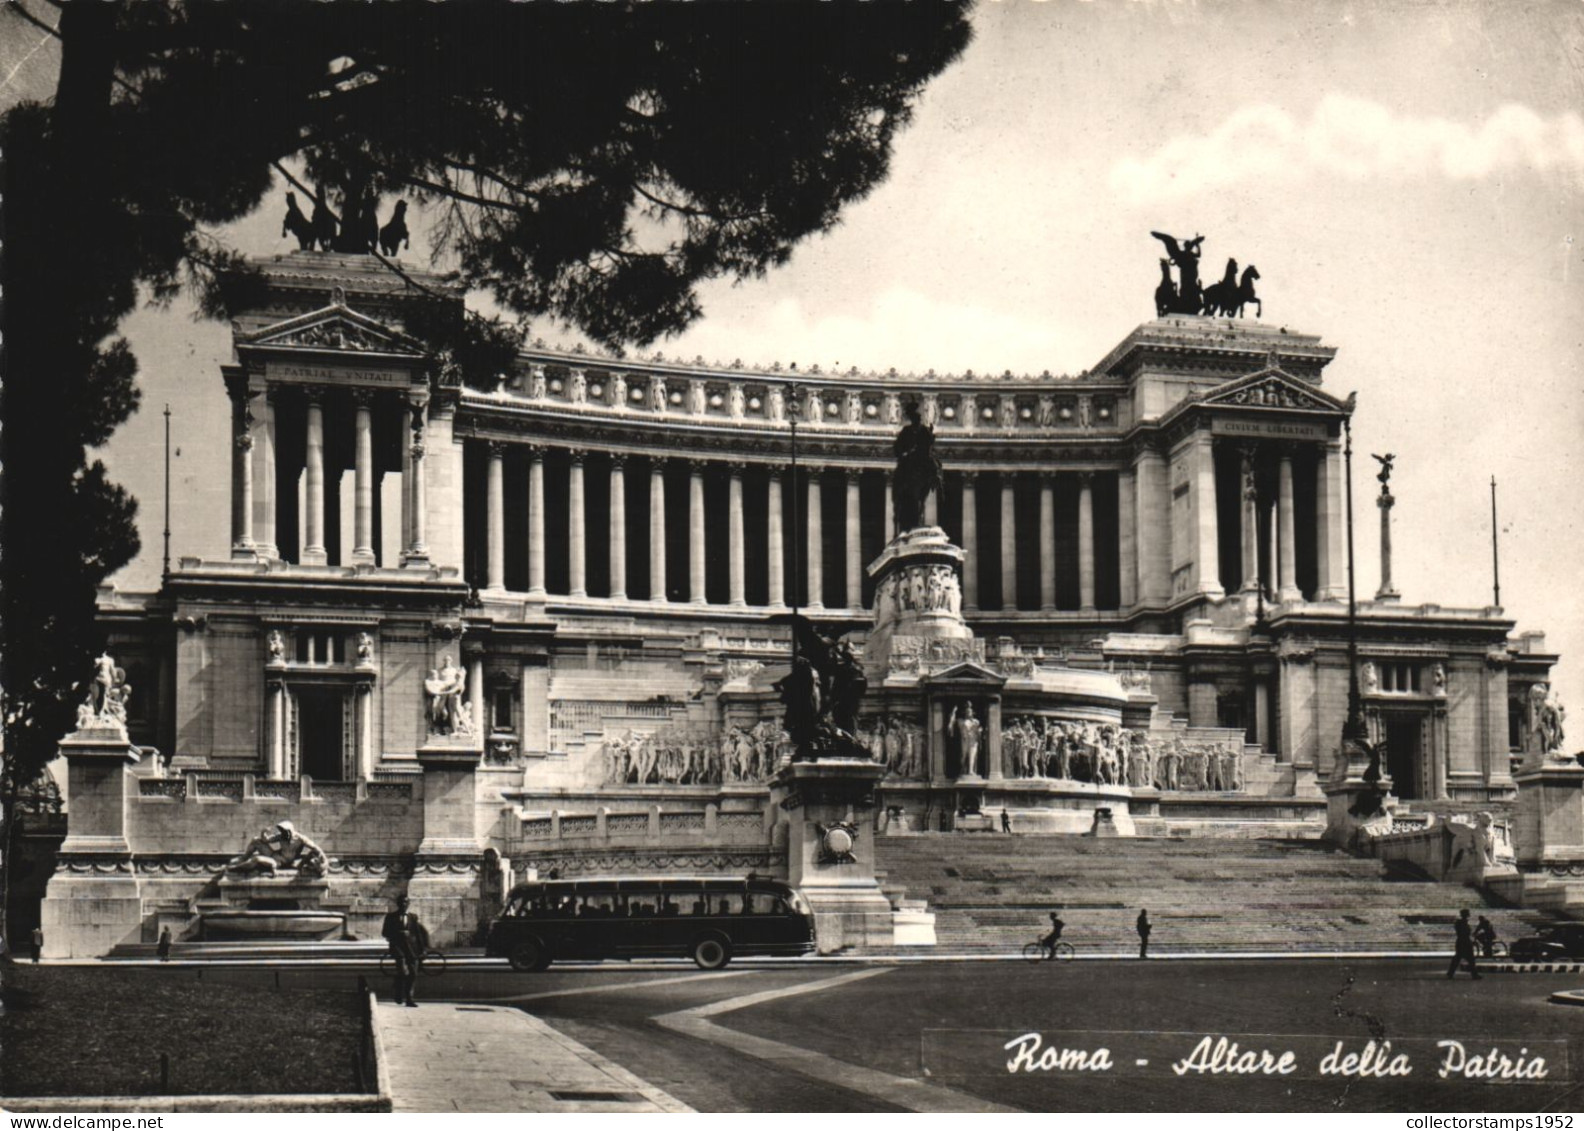 ROME, ALTARE DELLA PATRIA, MONUMENT, VICTOR EM. II, ITALY - Altare Della Patria